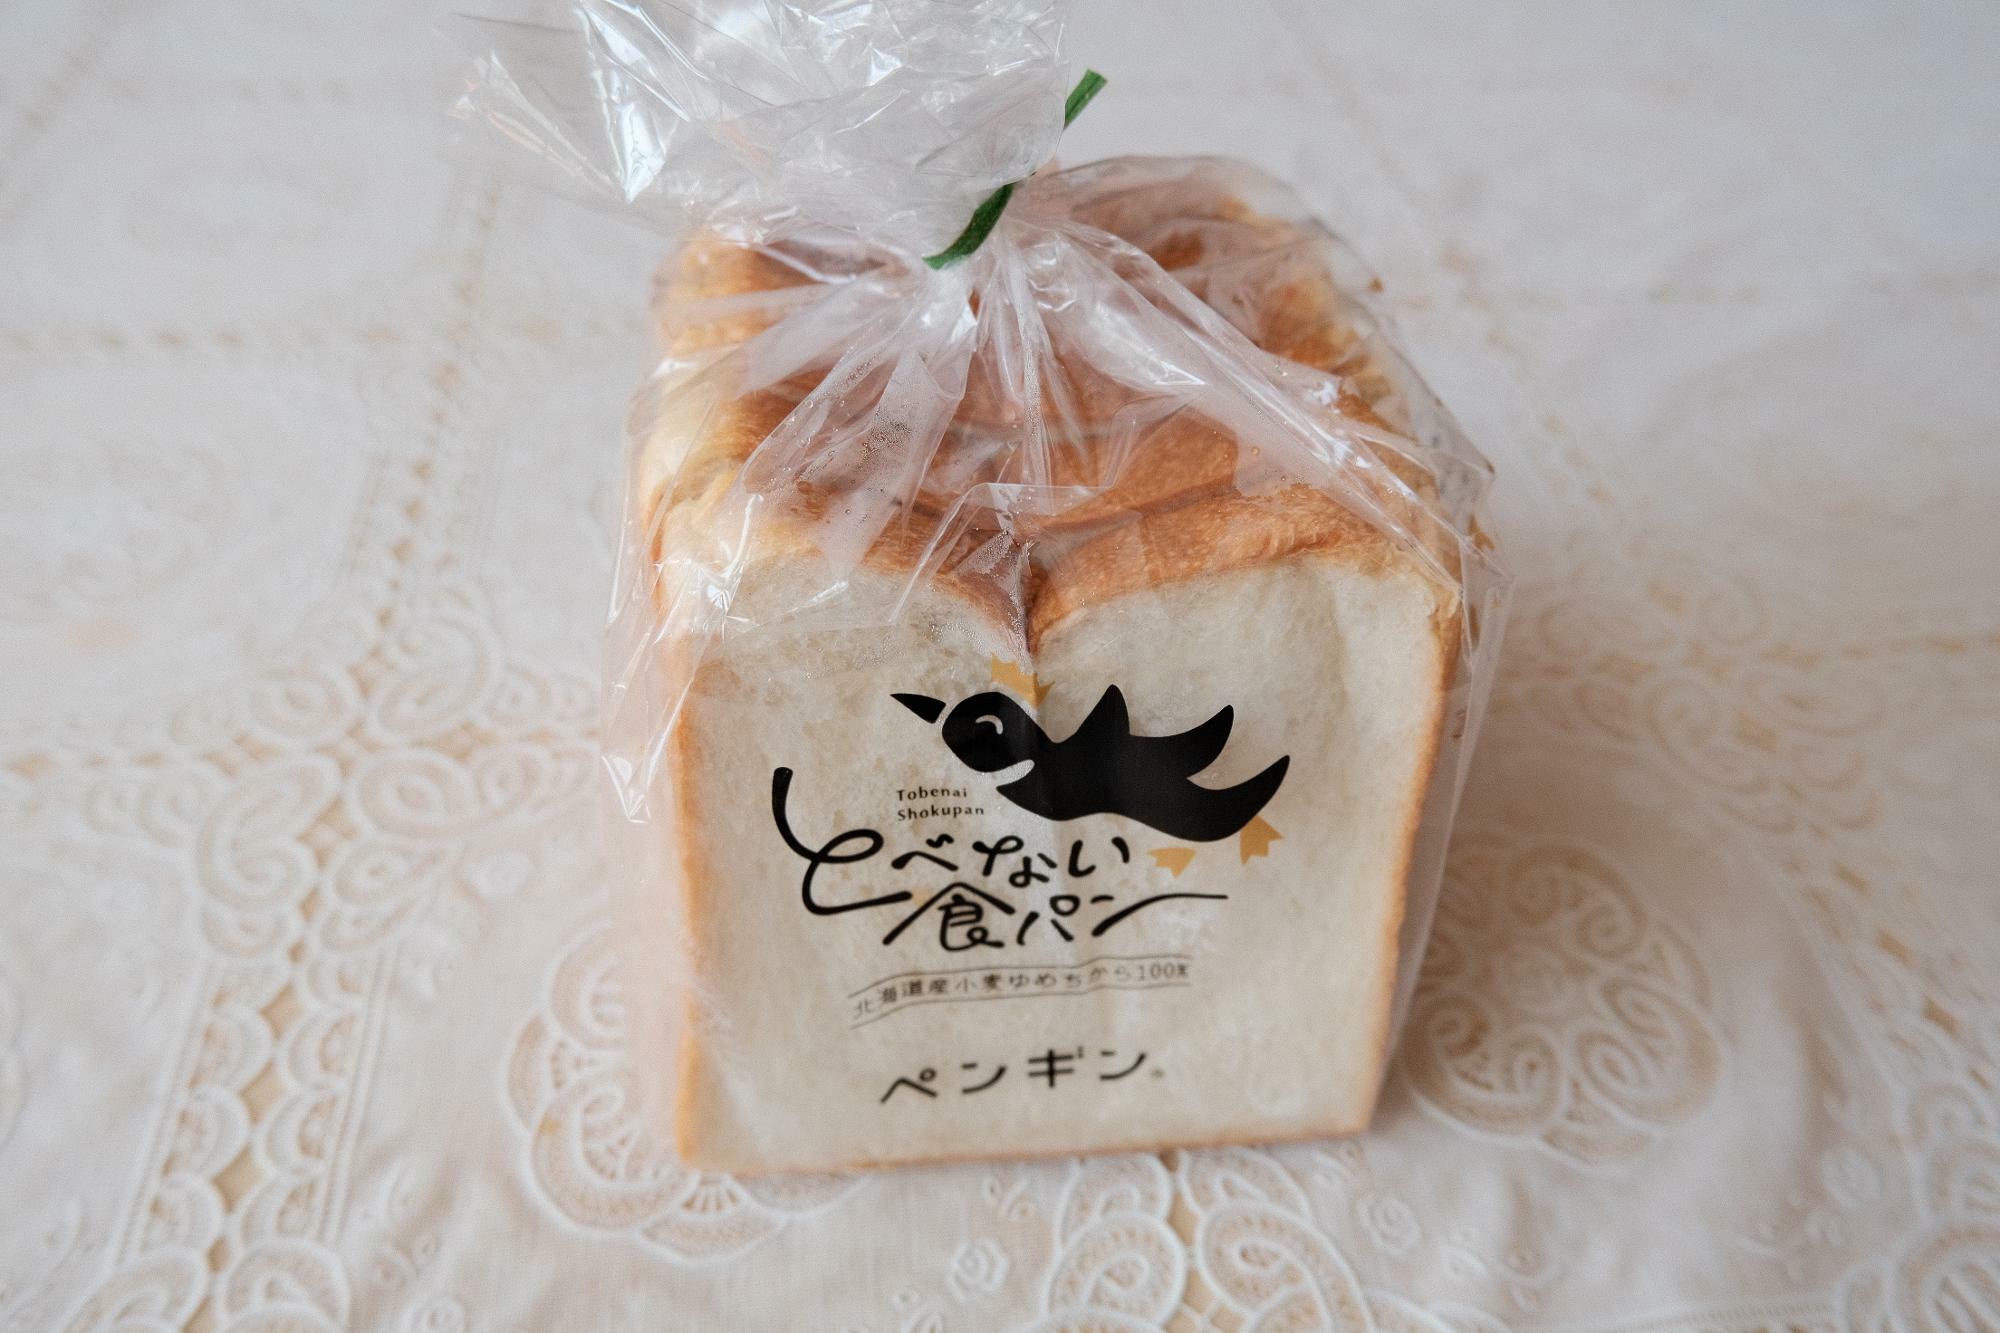 ずっしりとした重さのある「とべない食パン」は、レジにて購入可能